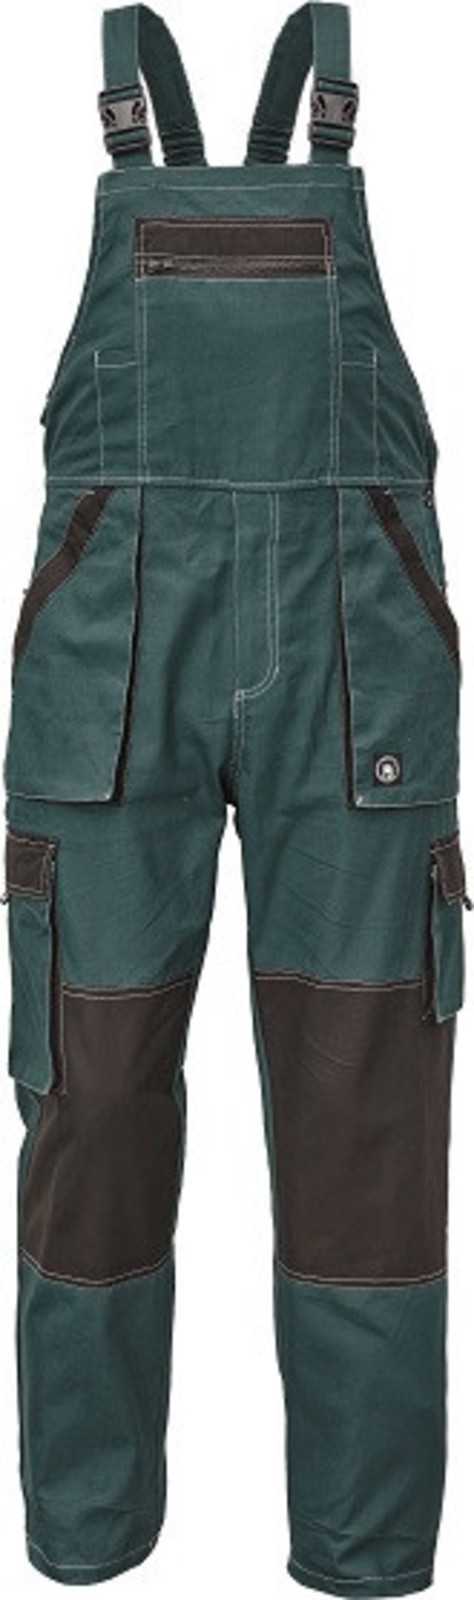 Tenšie bavlnené montérky na traky Max Summer - veľkosť: 60, farba: zelená/čierna